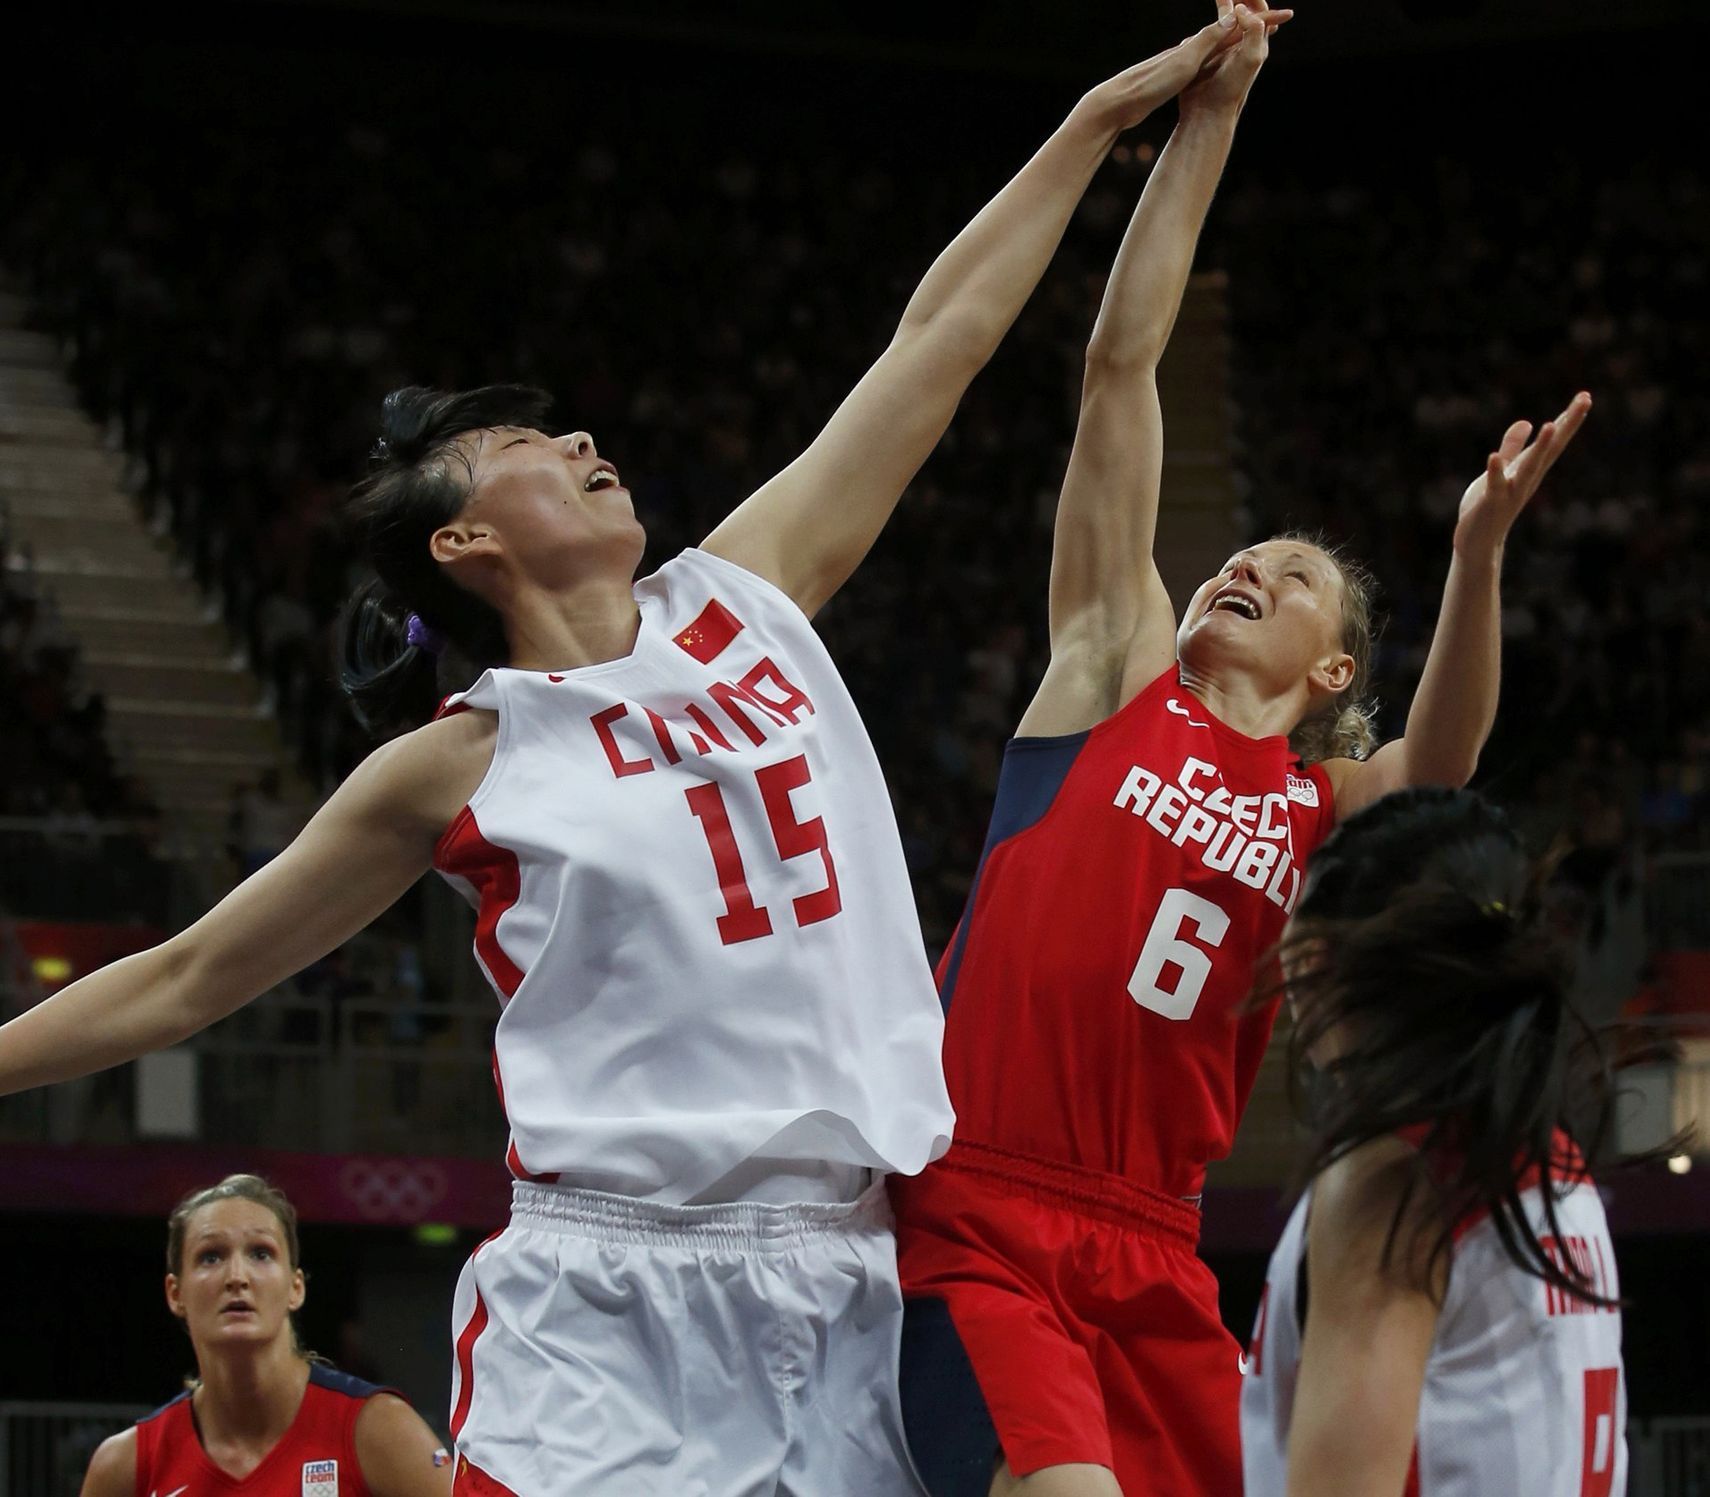 Česká basketbalistka Kateřina Bartoňová se snaží vybojovat míč s Číňankou Nan Čenovou v turnaji OH 2012 v Londýně.